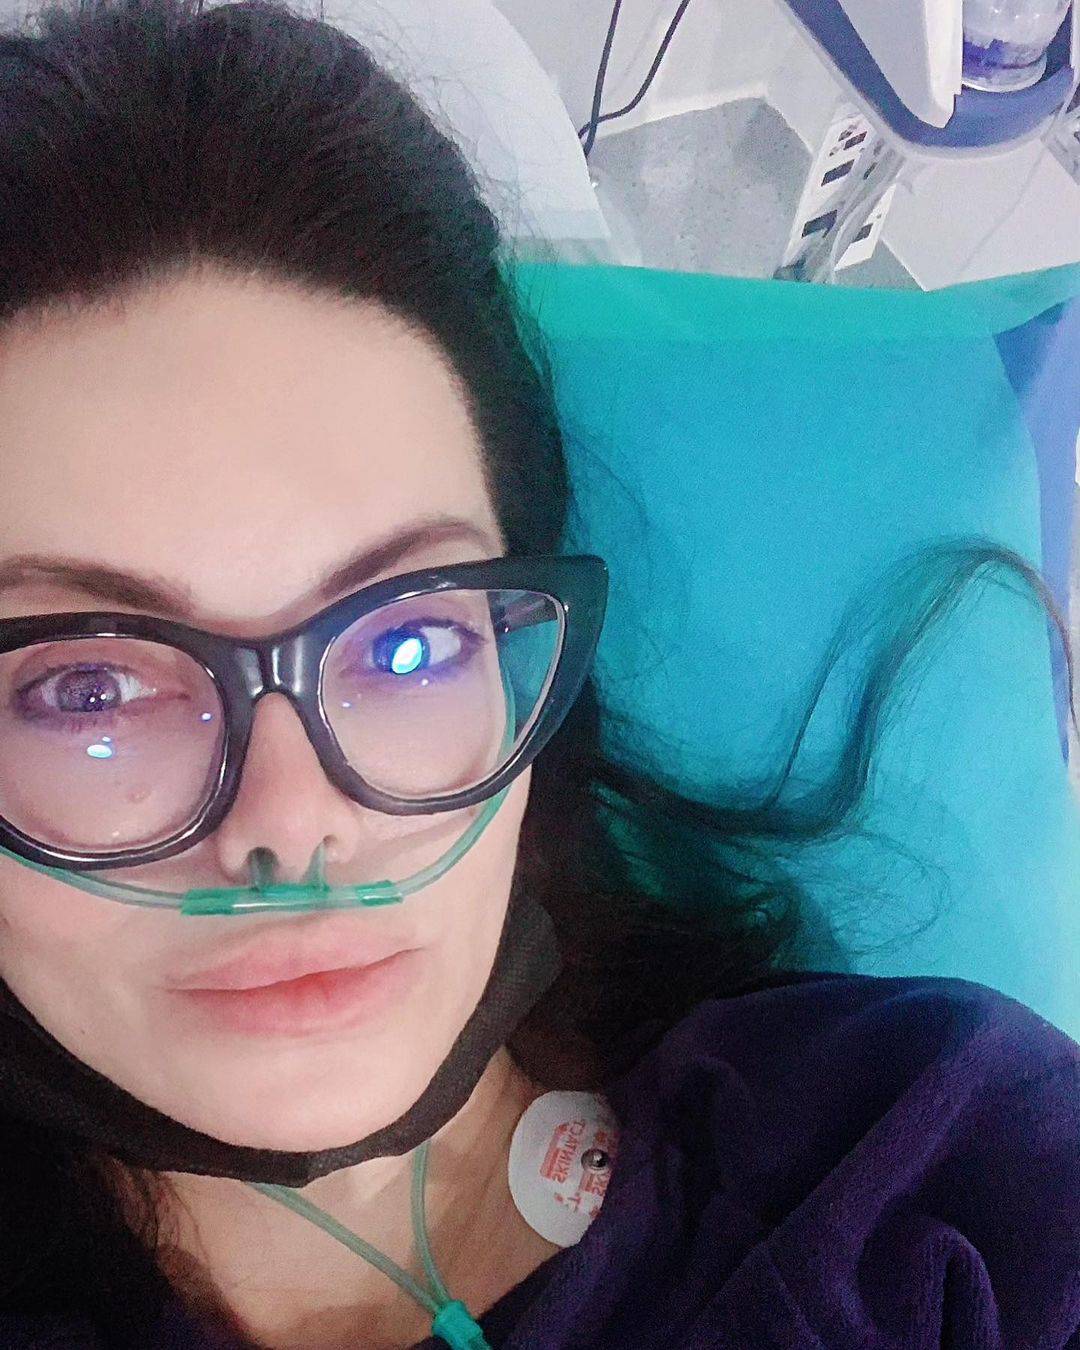 Pišek objavila fotke iz bolnice: Naš drugi rođendan jer smo žive